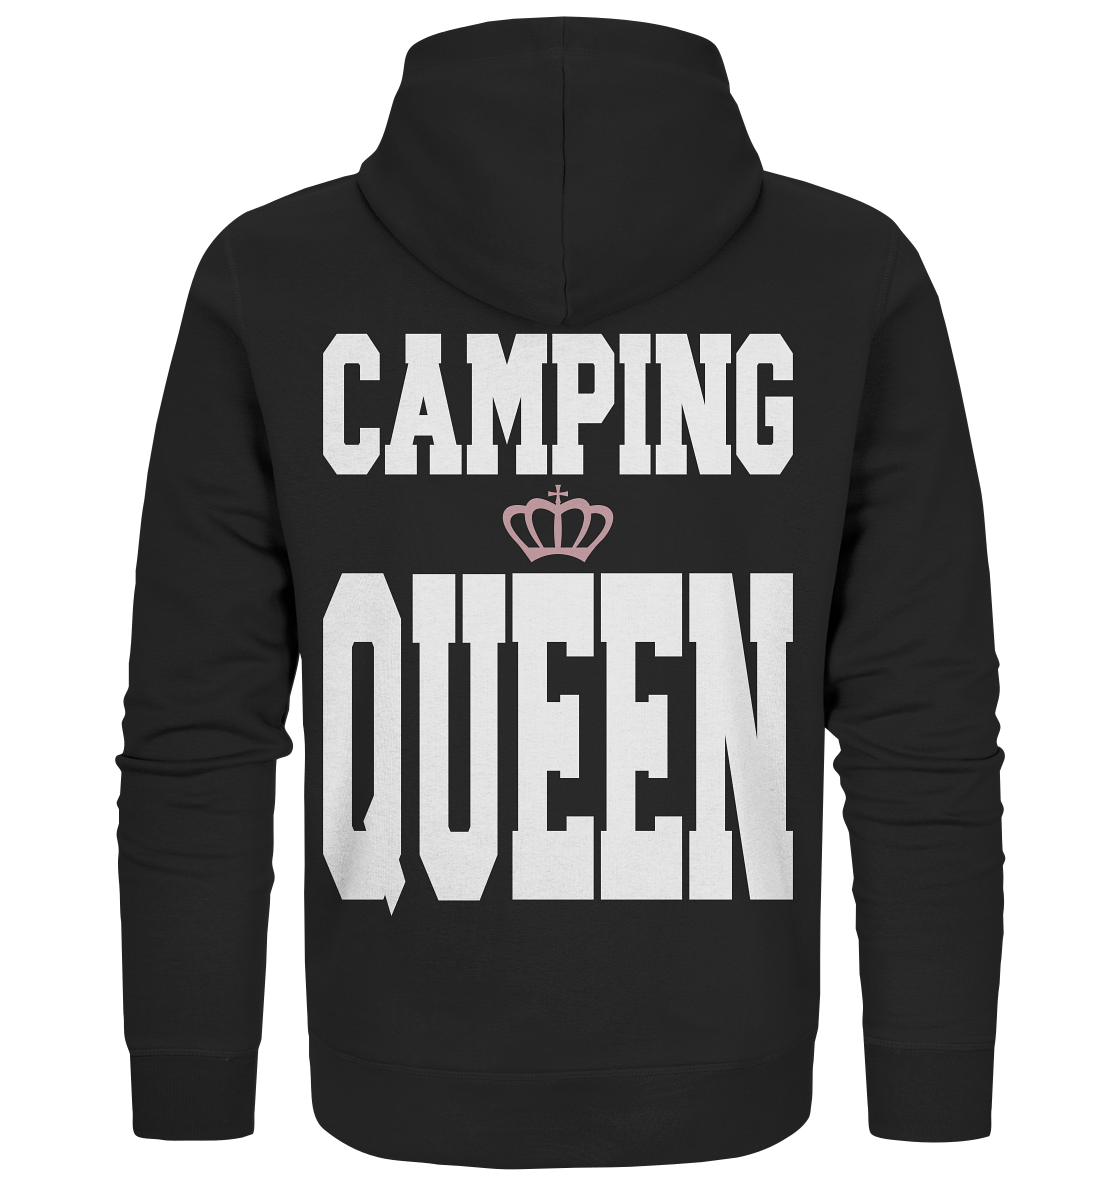 Camping Queen - Organic Zipper